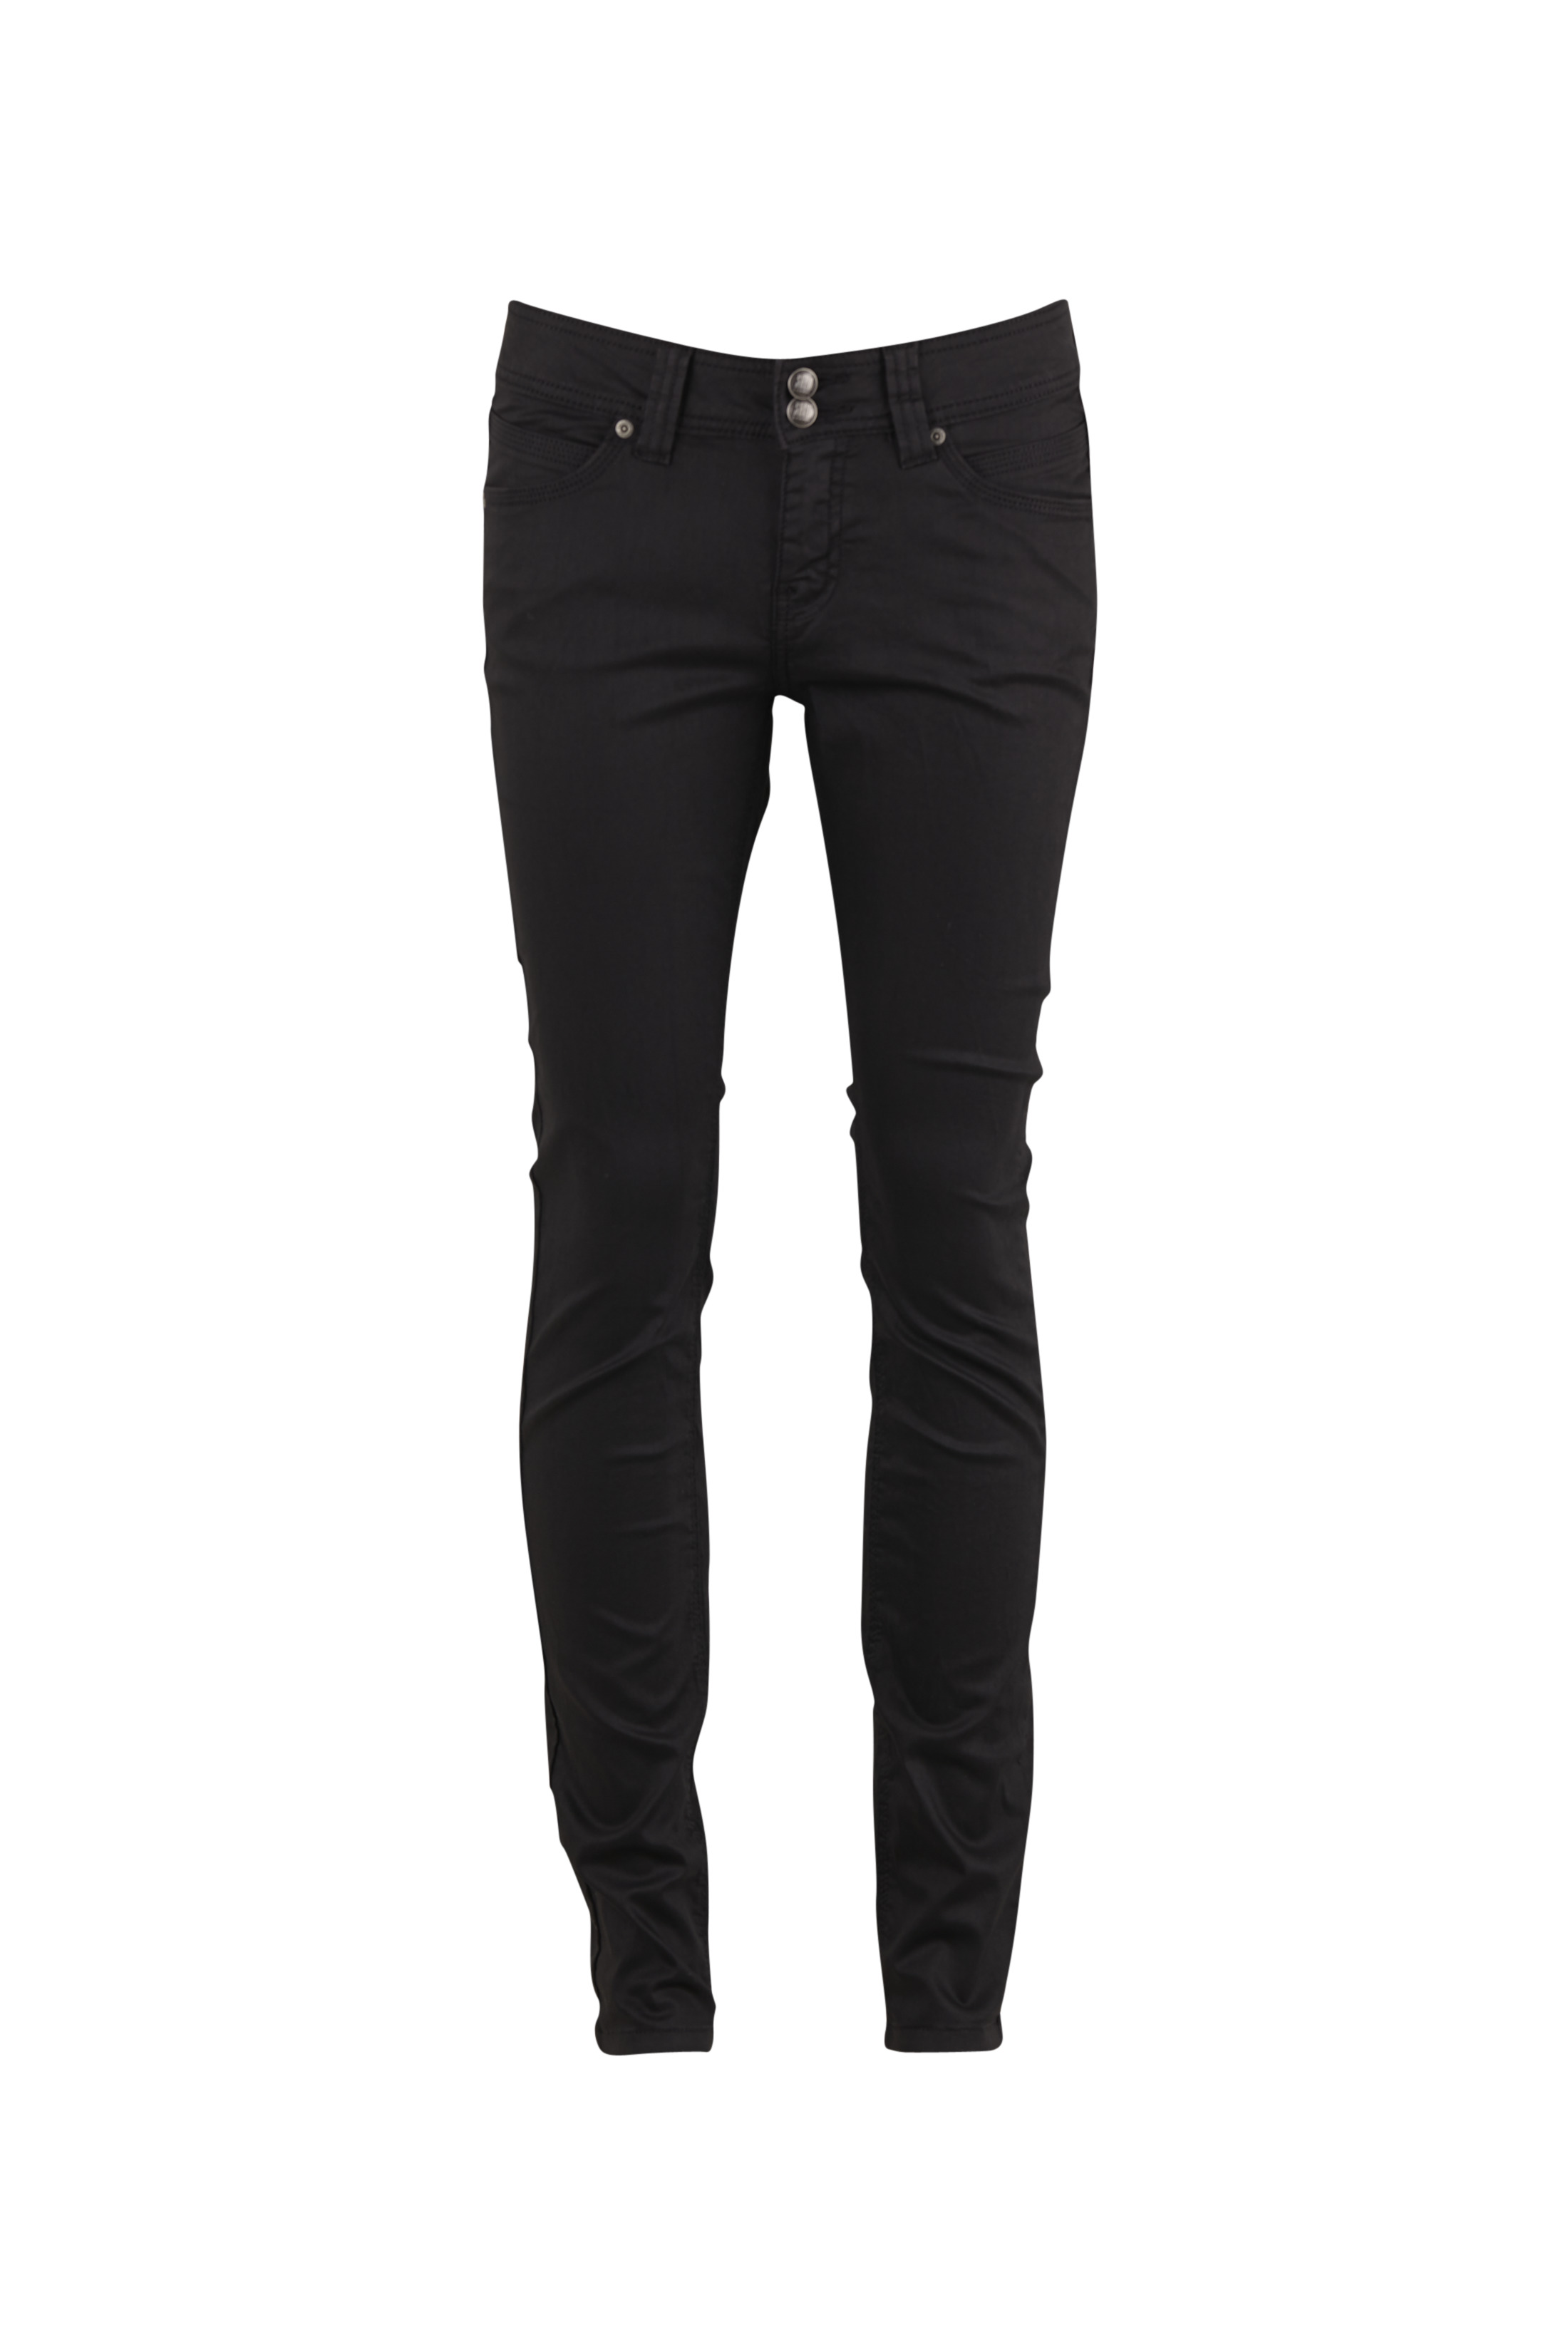 Sort Saint Tropez Saint Tropez Dame Saint jeans Regular fit, mellem talje og lige ben. 5 lommer model med lynlås og måler cm - Black casual Bukser for